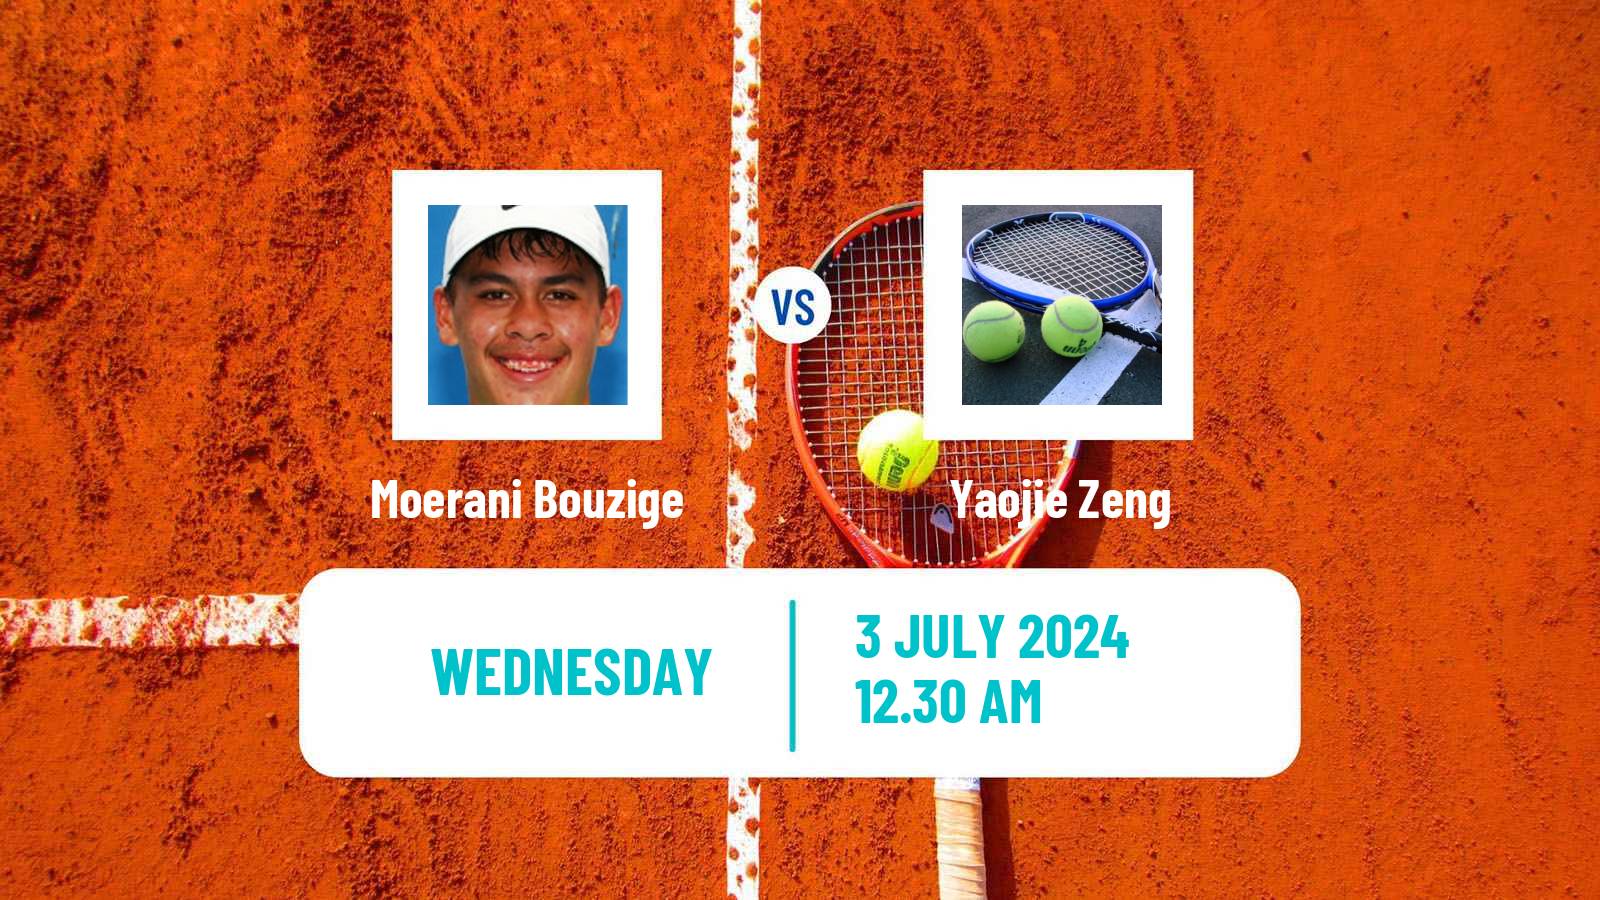 Tennis ITF M15 Tianjin 2 Men Moerani Bouzige - Yaojie Zeng